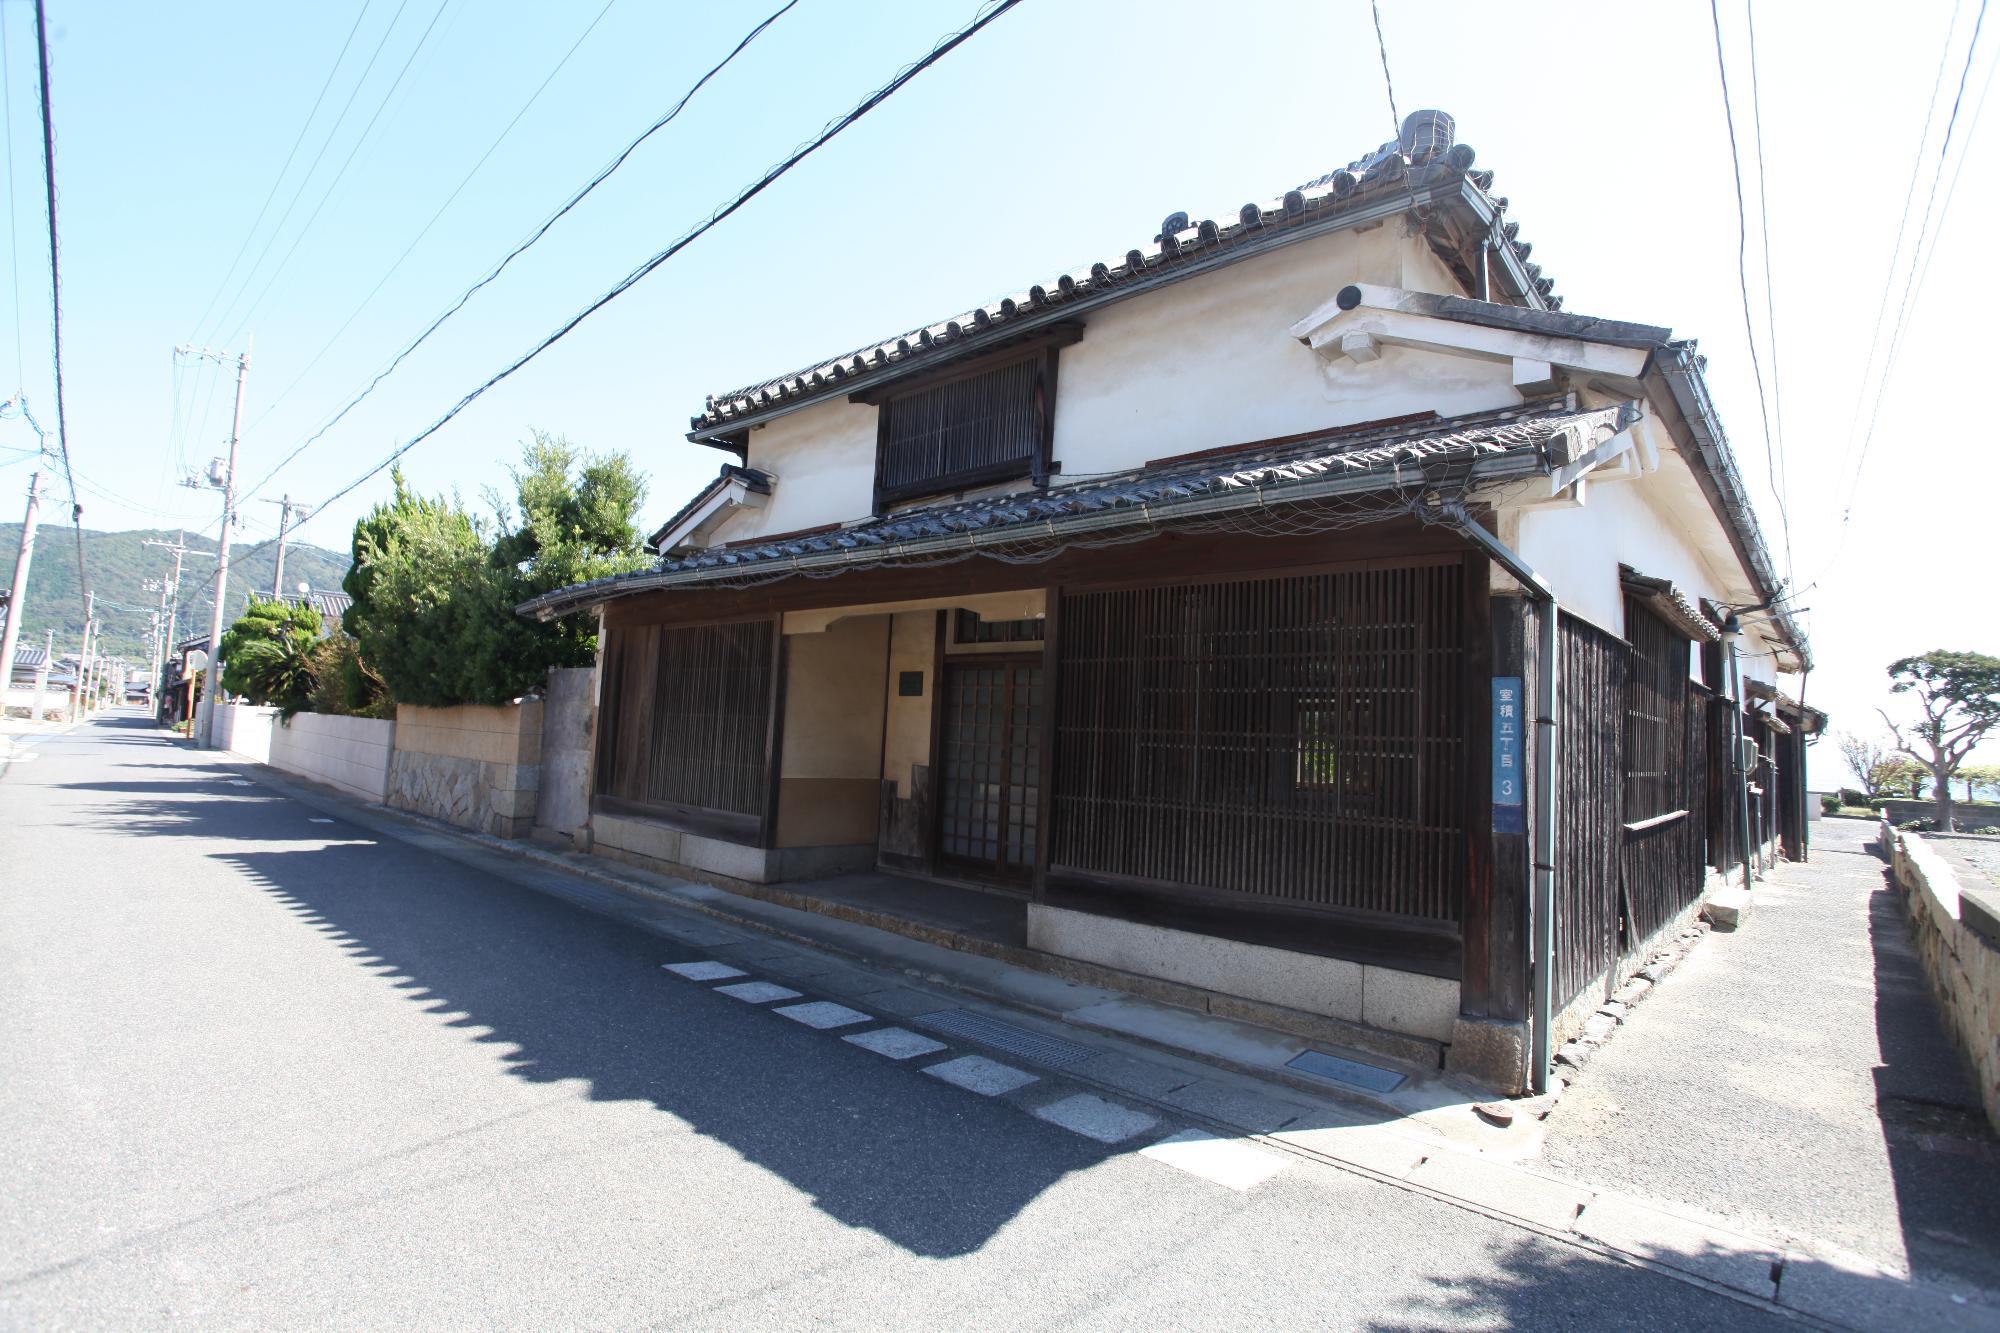 二階建ての古い日本家屋風の旧礒乃屋の写真